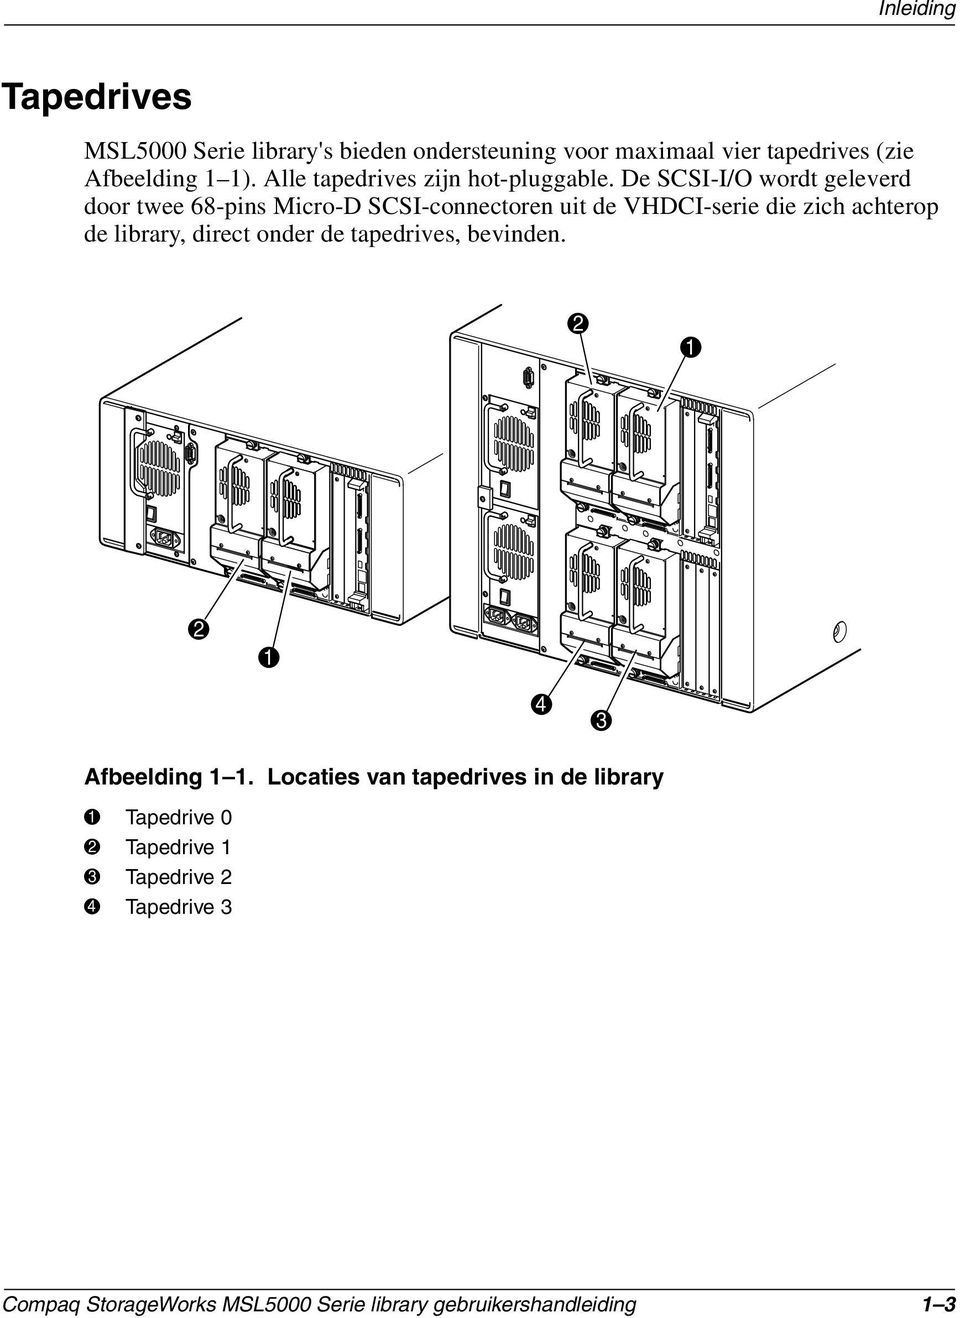 De SCSI-I/O wordt geleverd door twee 68-pins Micro-D SCSI-connectoren uit de VHDCI-serie die zich achterop de library,